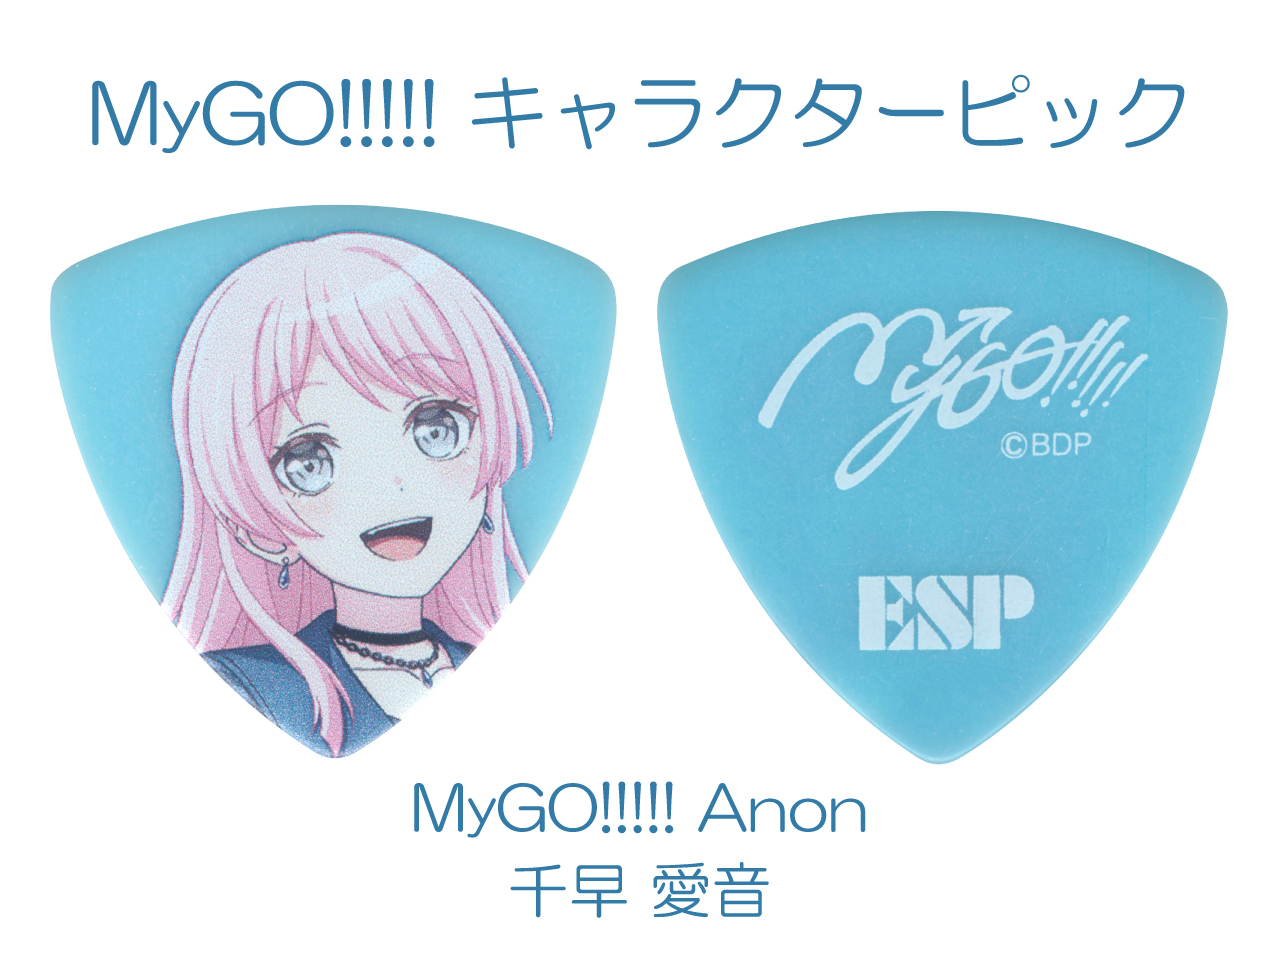 【ESP×BanG Dream!コラボピック】MyGO!!!!! キャラクターピック / MyGO!!!!! Anon (千早 愛音 モデル)